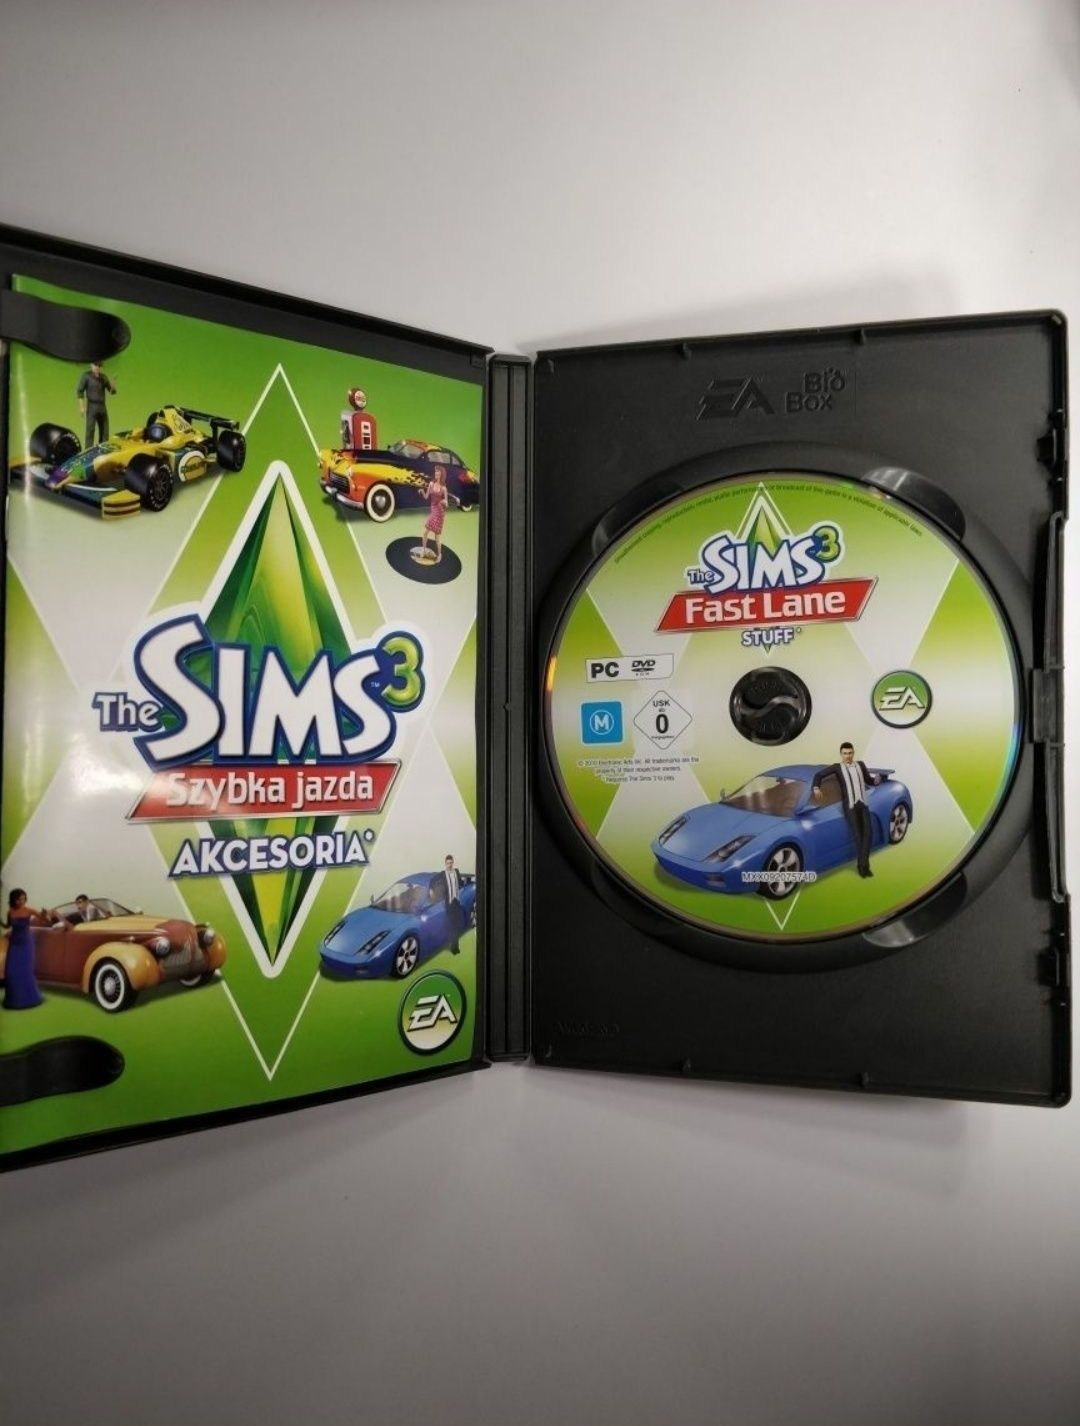 The Sims 3 Szybka Jazda-ostateczna cena